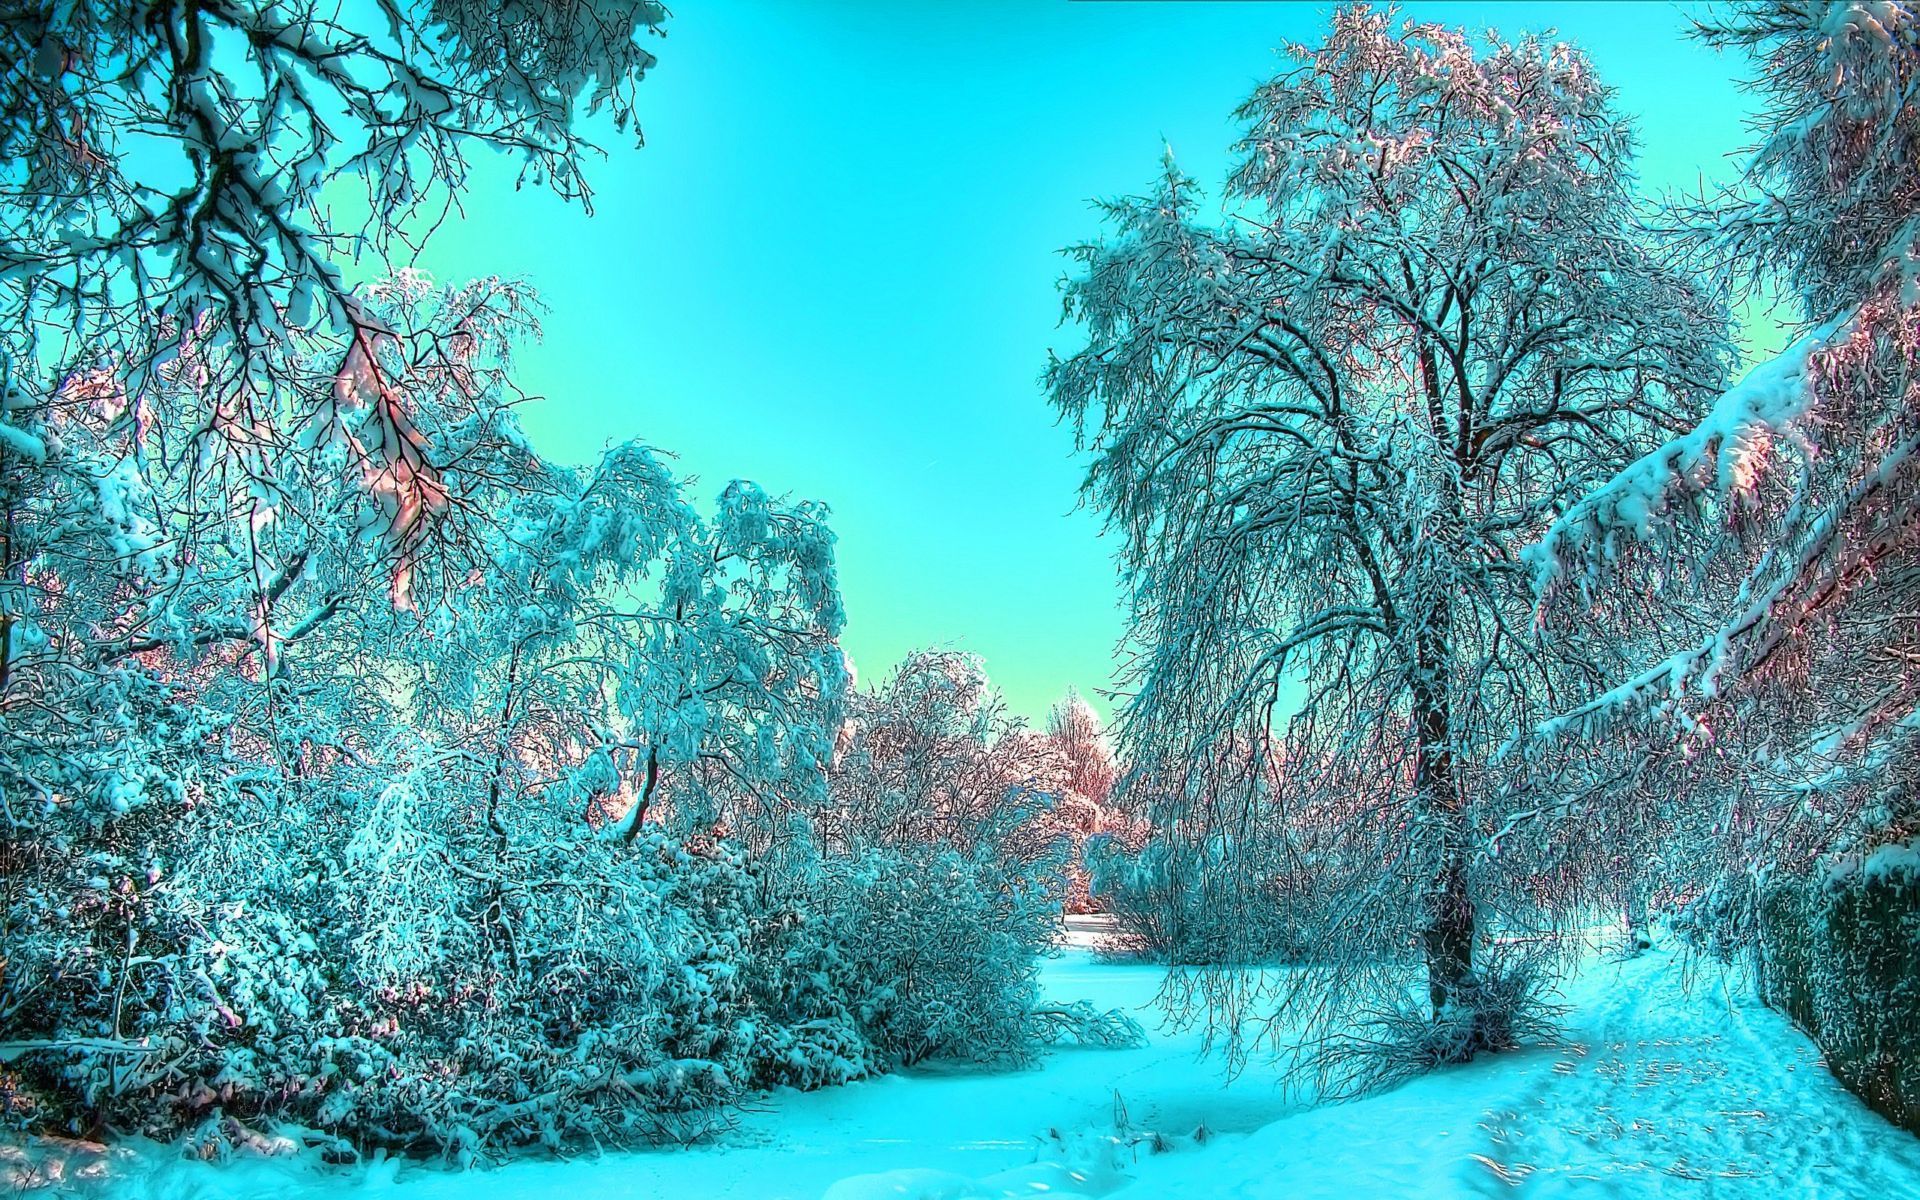 Скачать обои бесплатно Деревья, Пейзаж, Зима, Снег картинка на рабочий стол ПК